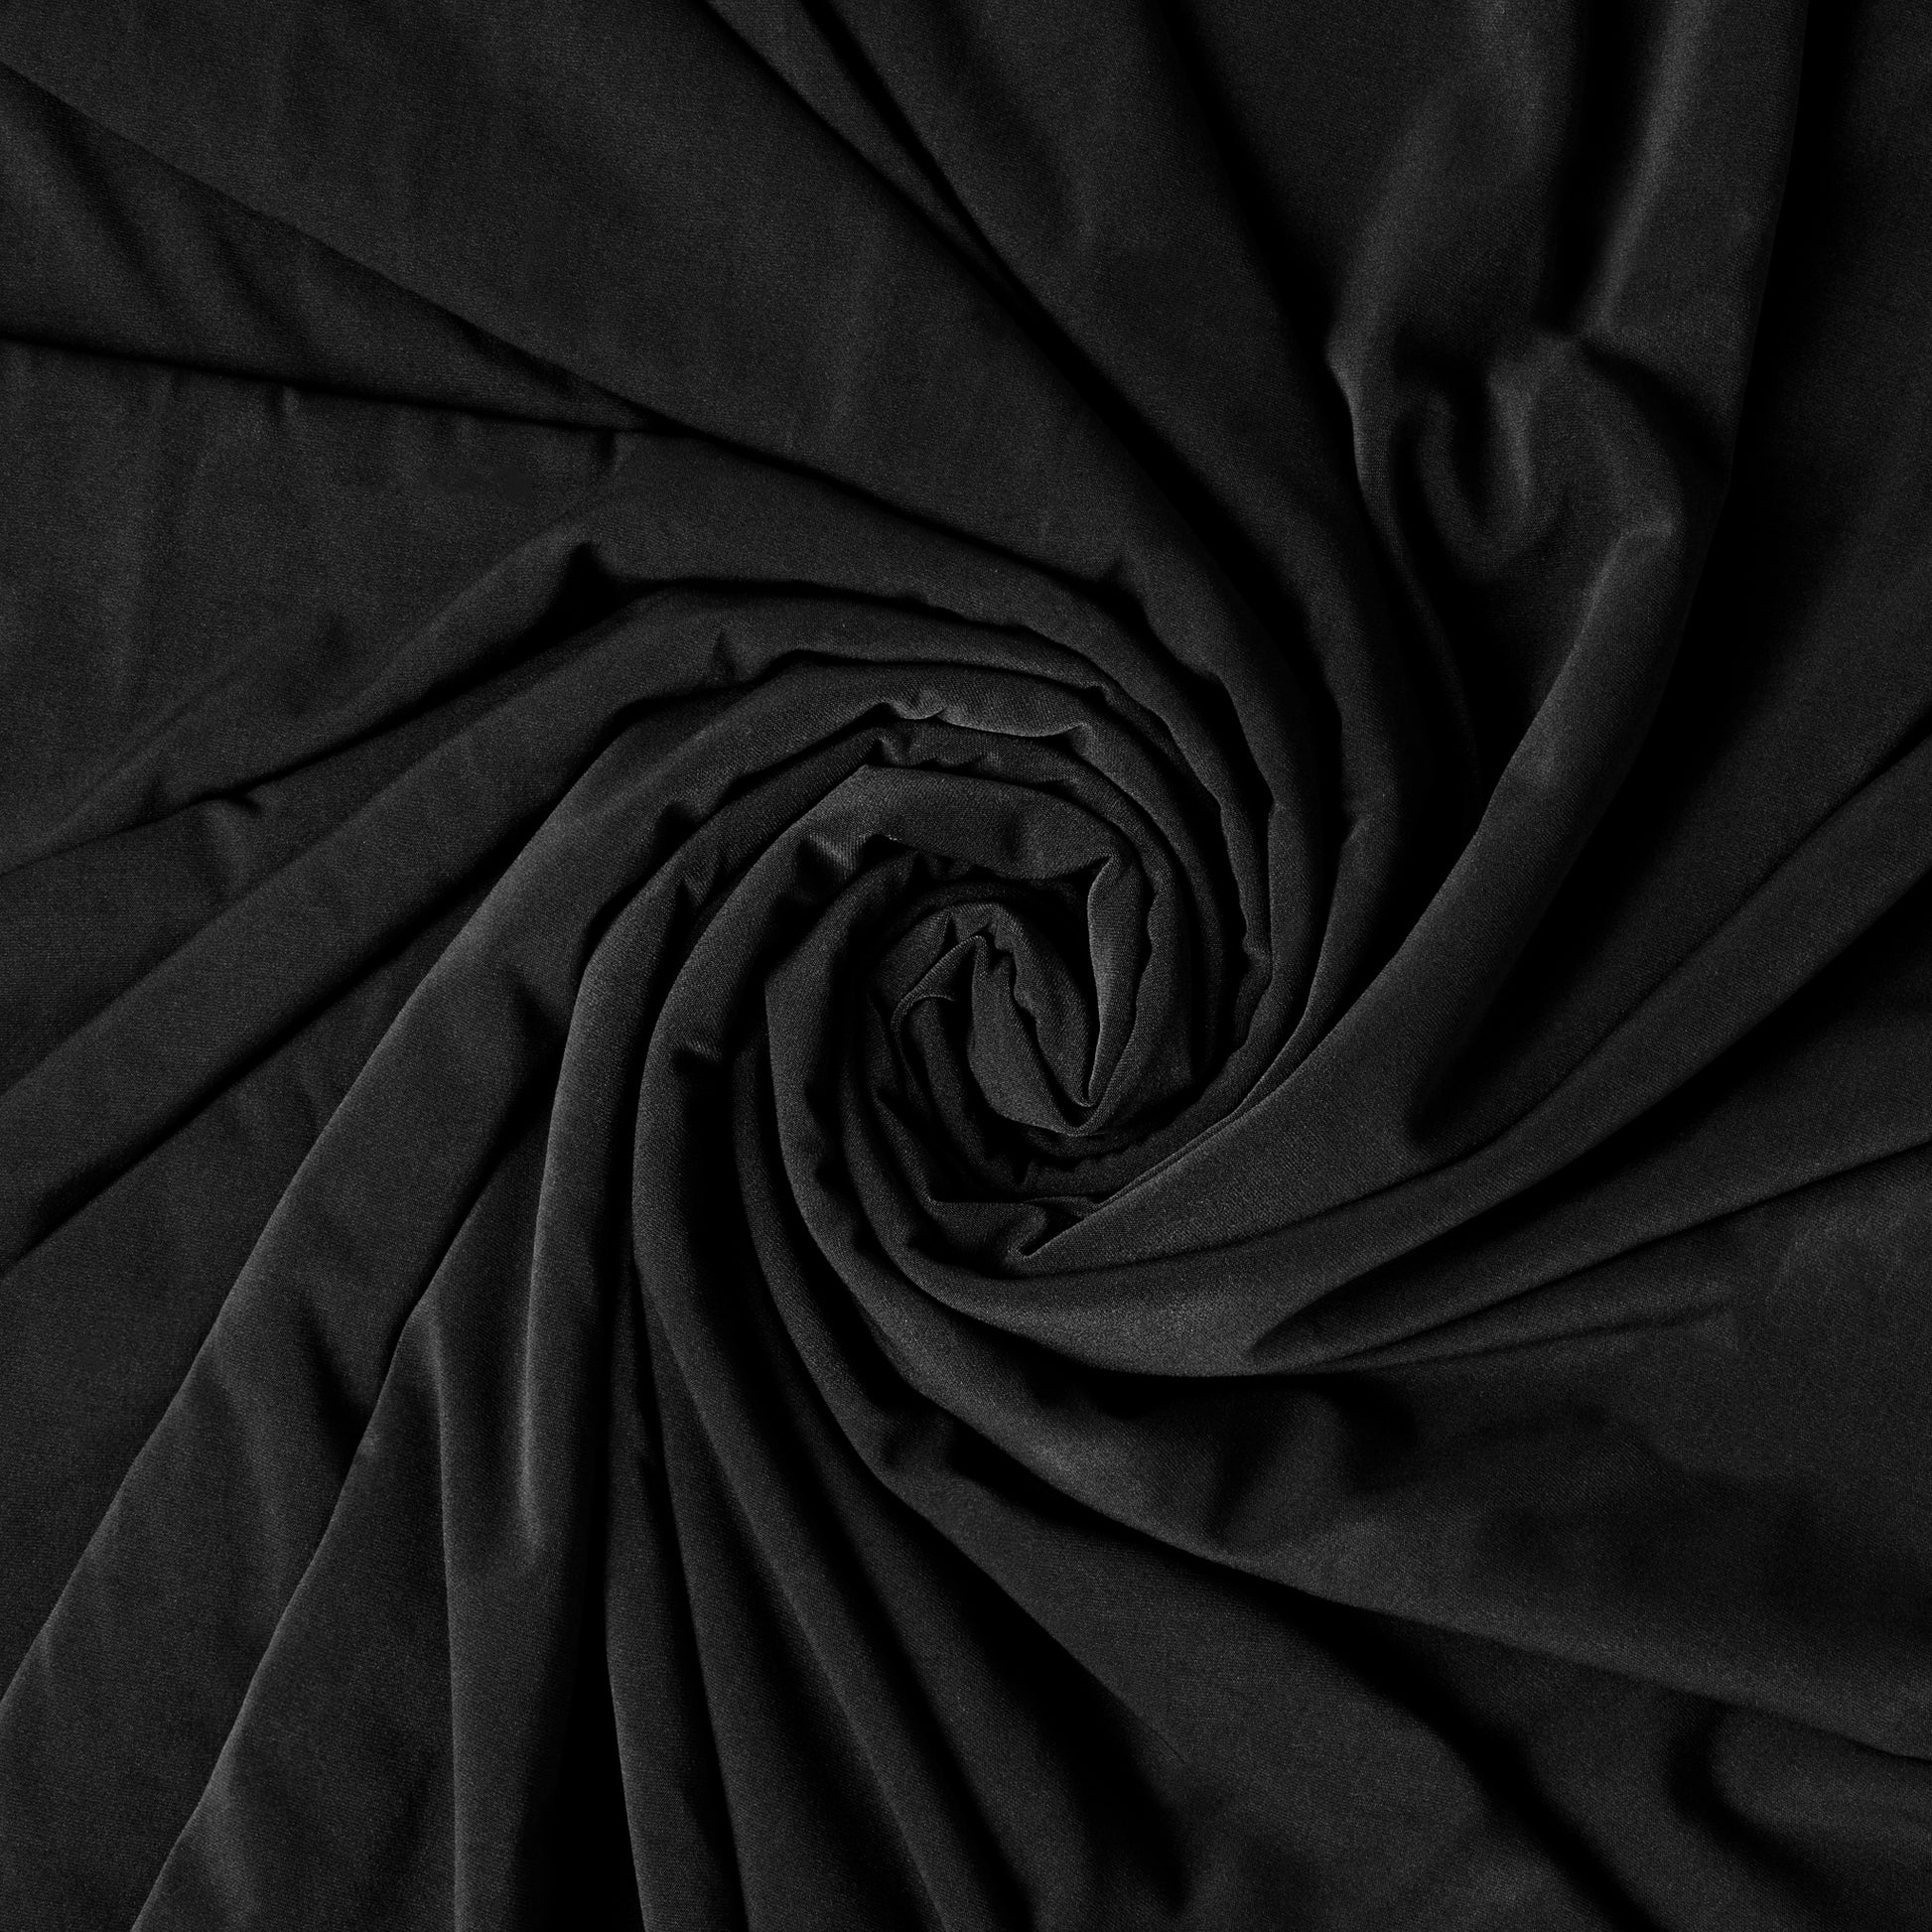 https://www.cvlinens.com/cdn/shop/products/Spandex-Stretch-4-way-Fabric-Roll-10-Yards-Black.jpg?v=1604082689&width=1946